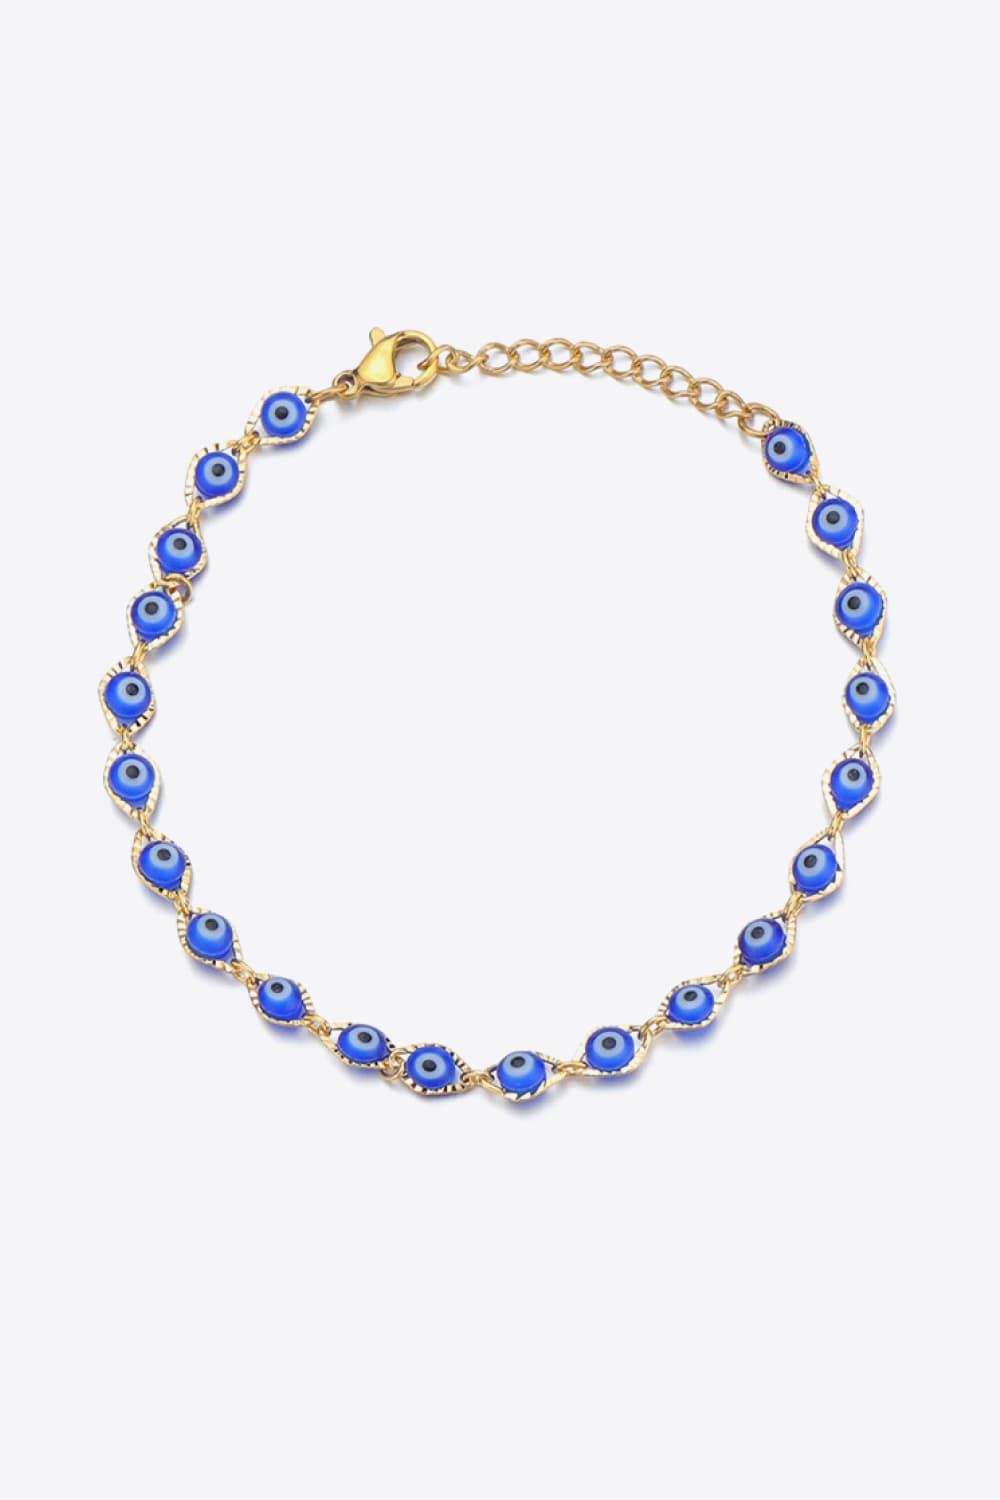 Evil Eye Copper Bracelet - Women’s Jewelry - Bracelets - 8 - 2024